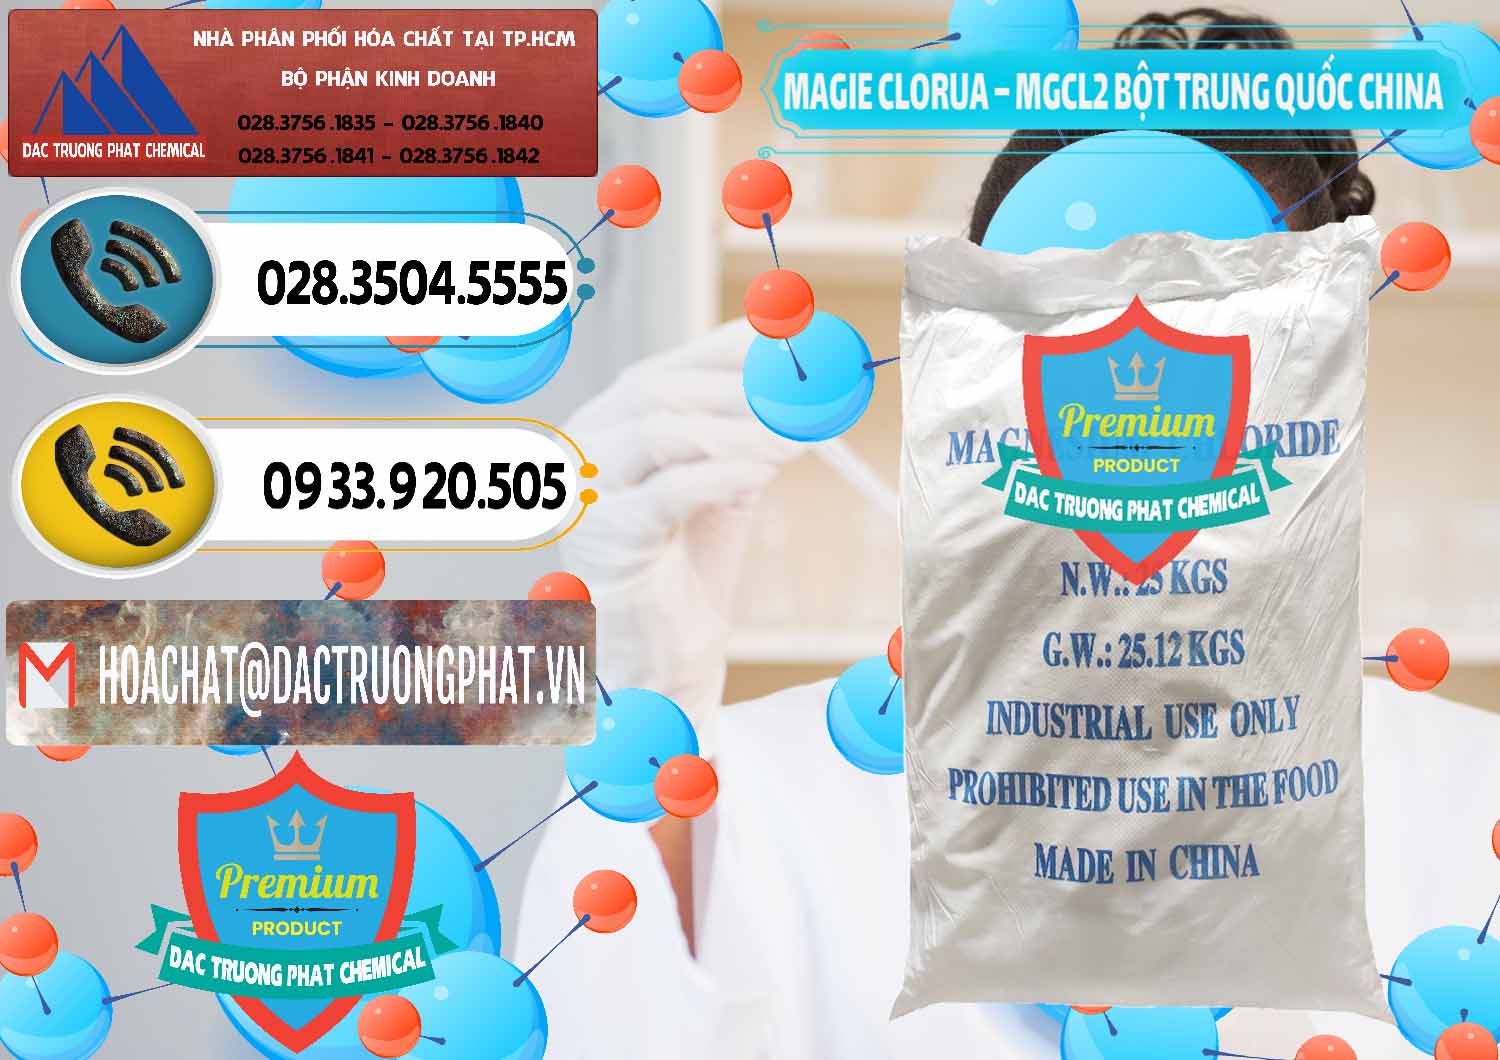 Đơn vị chuyên phân phối ( bán ) Magie Clorua – MGCL2 96% Dạng Bột Bao Chữ Xanh Trung Quốc China - 0207 - Nơi chuyên cung cấp và kinh doanh hóa chất tại TP.HCM - hoachatdetnhuom.vn